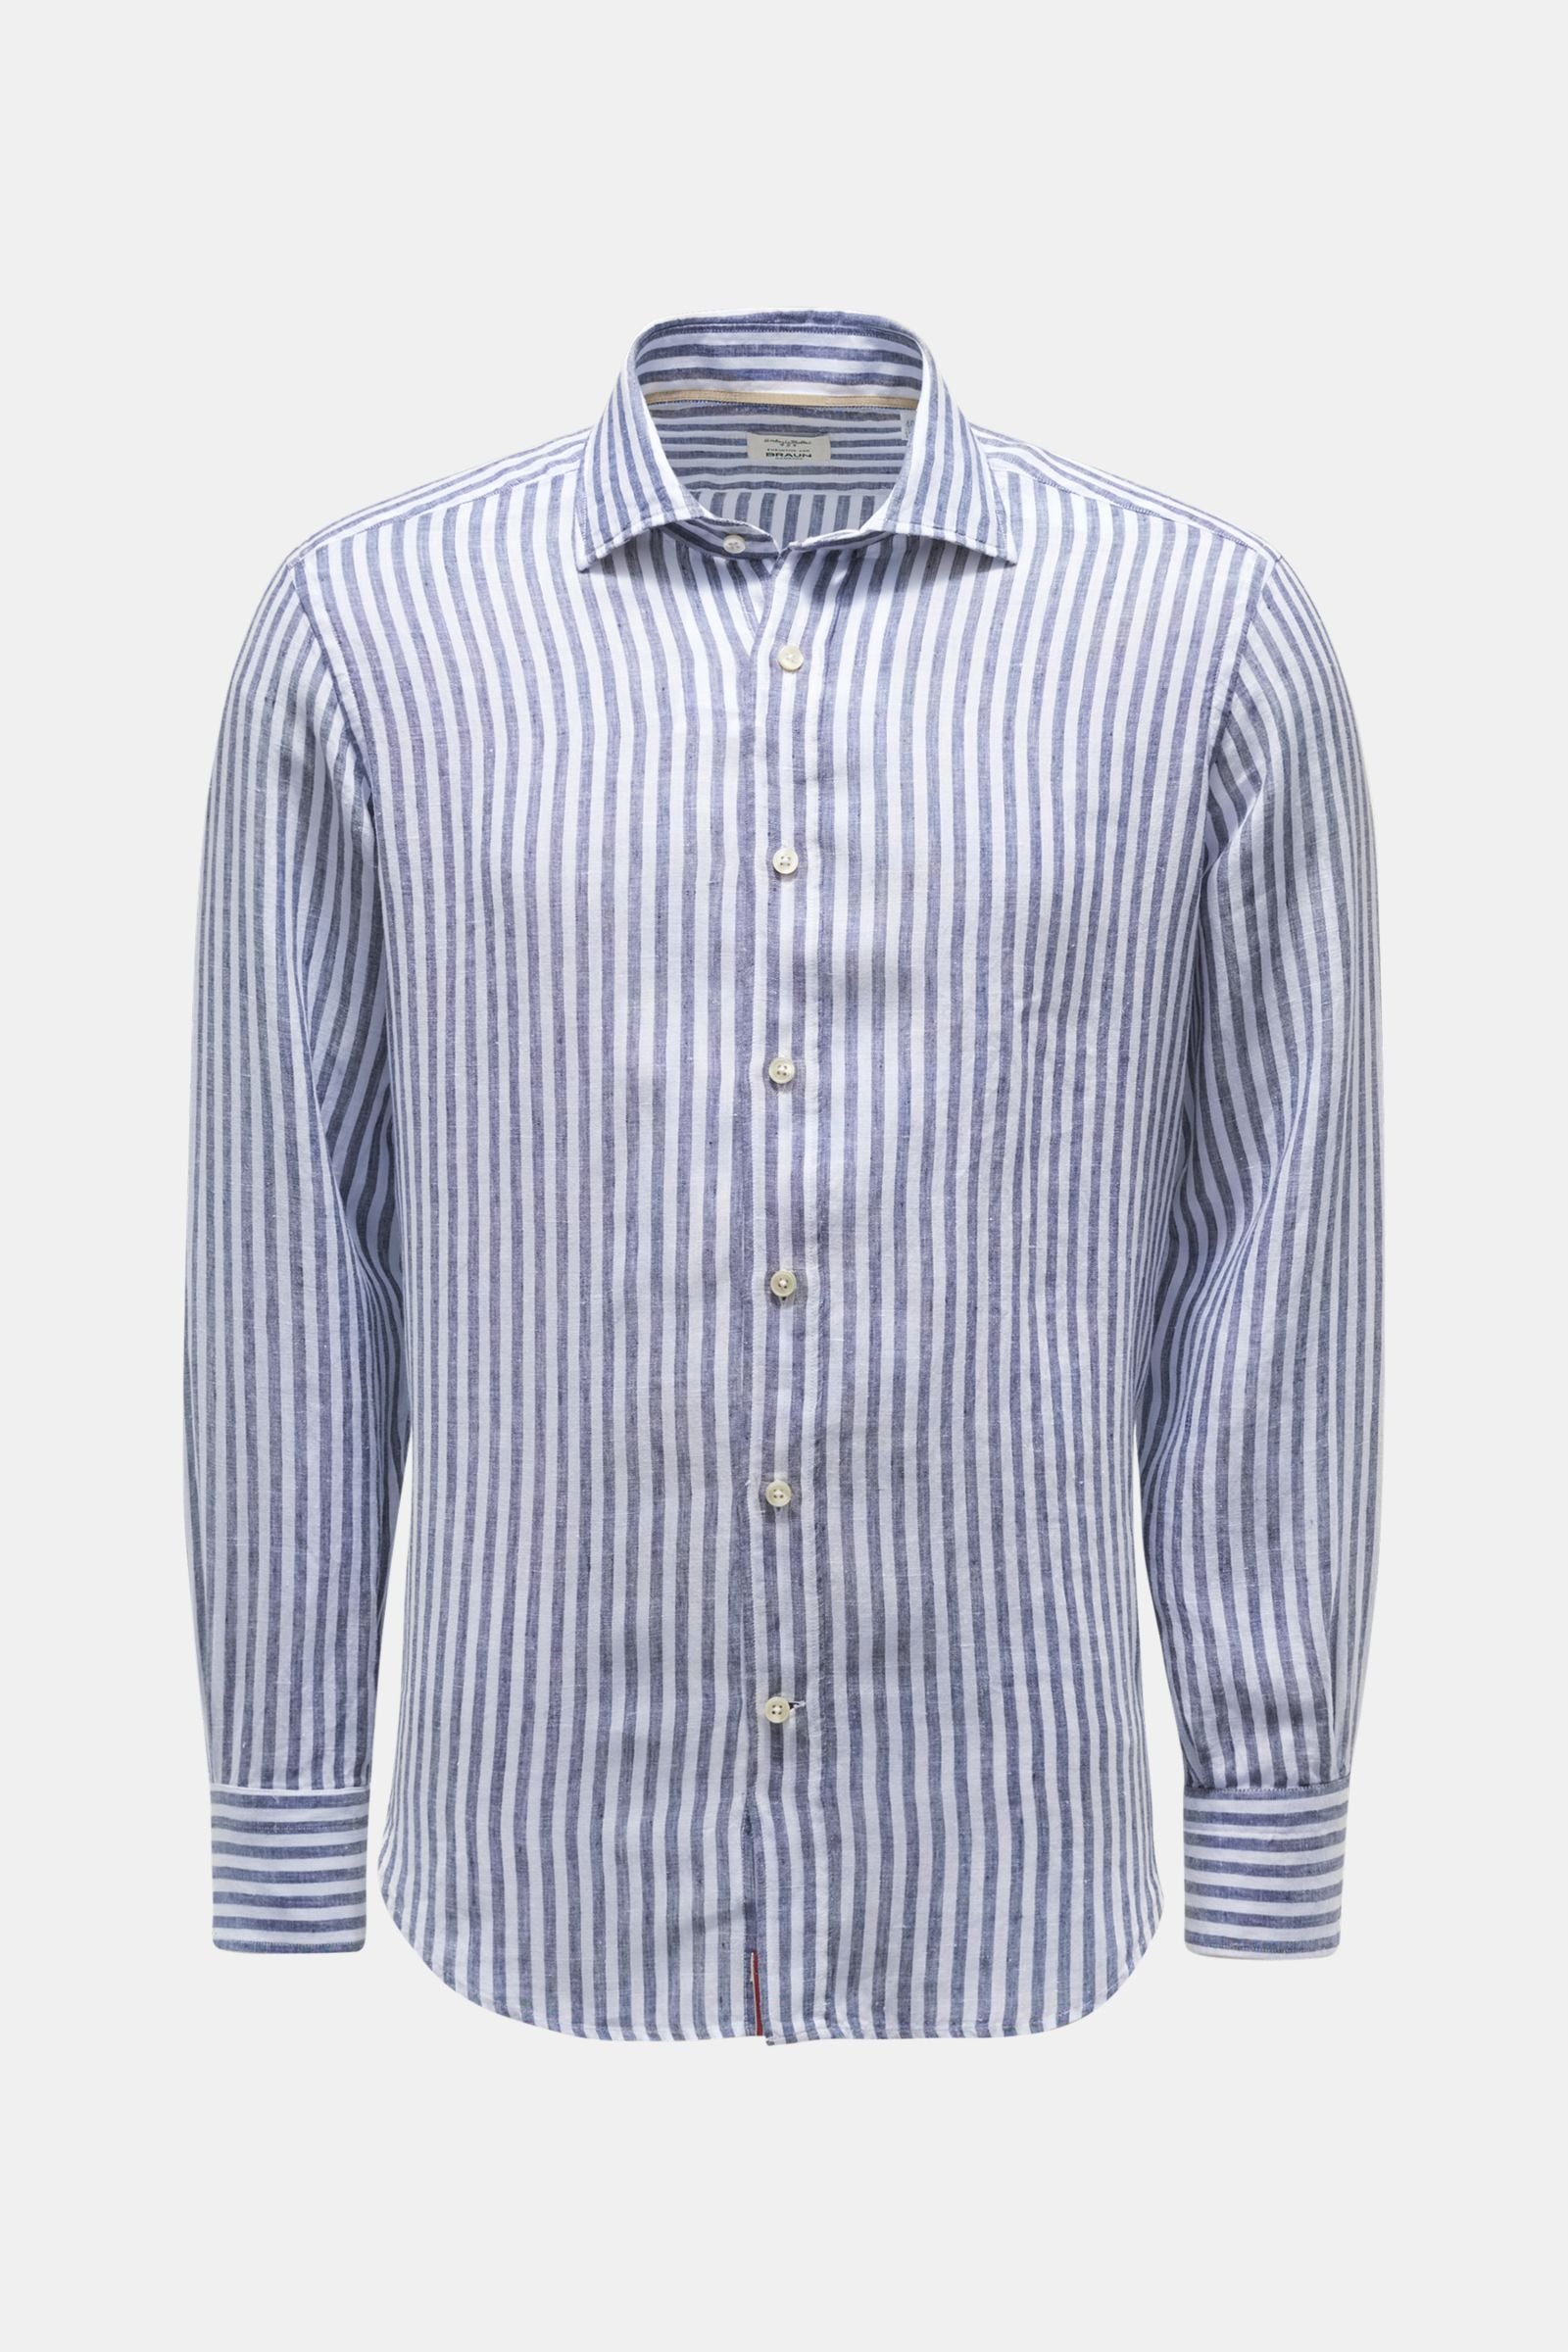 Linen shirt shark collar grey-blue/white striped